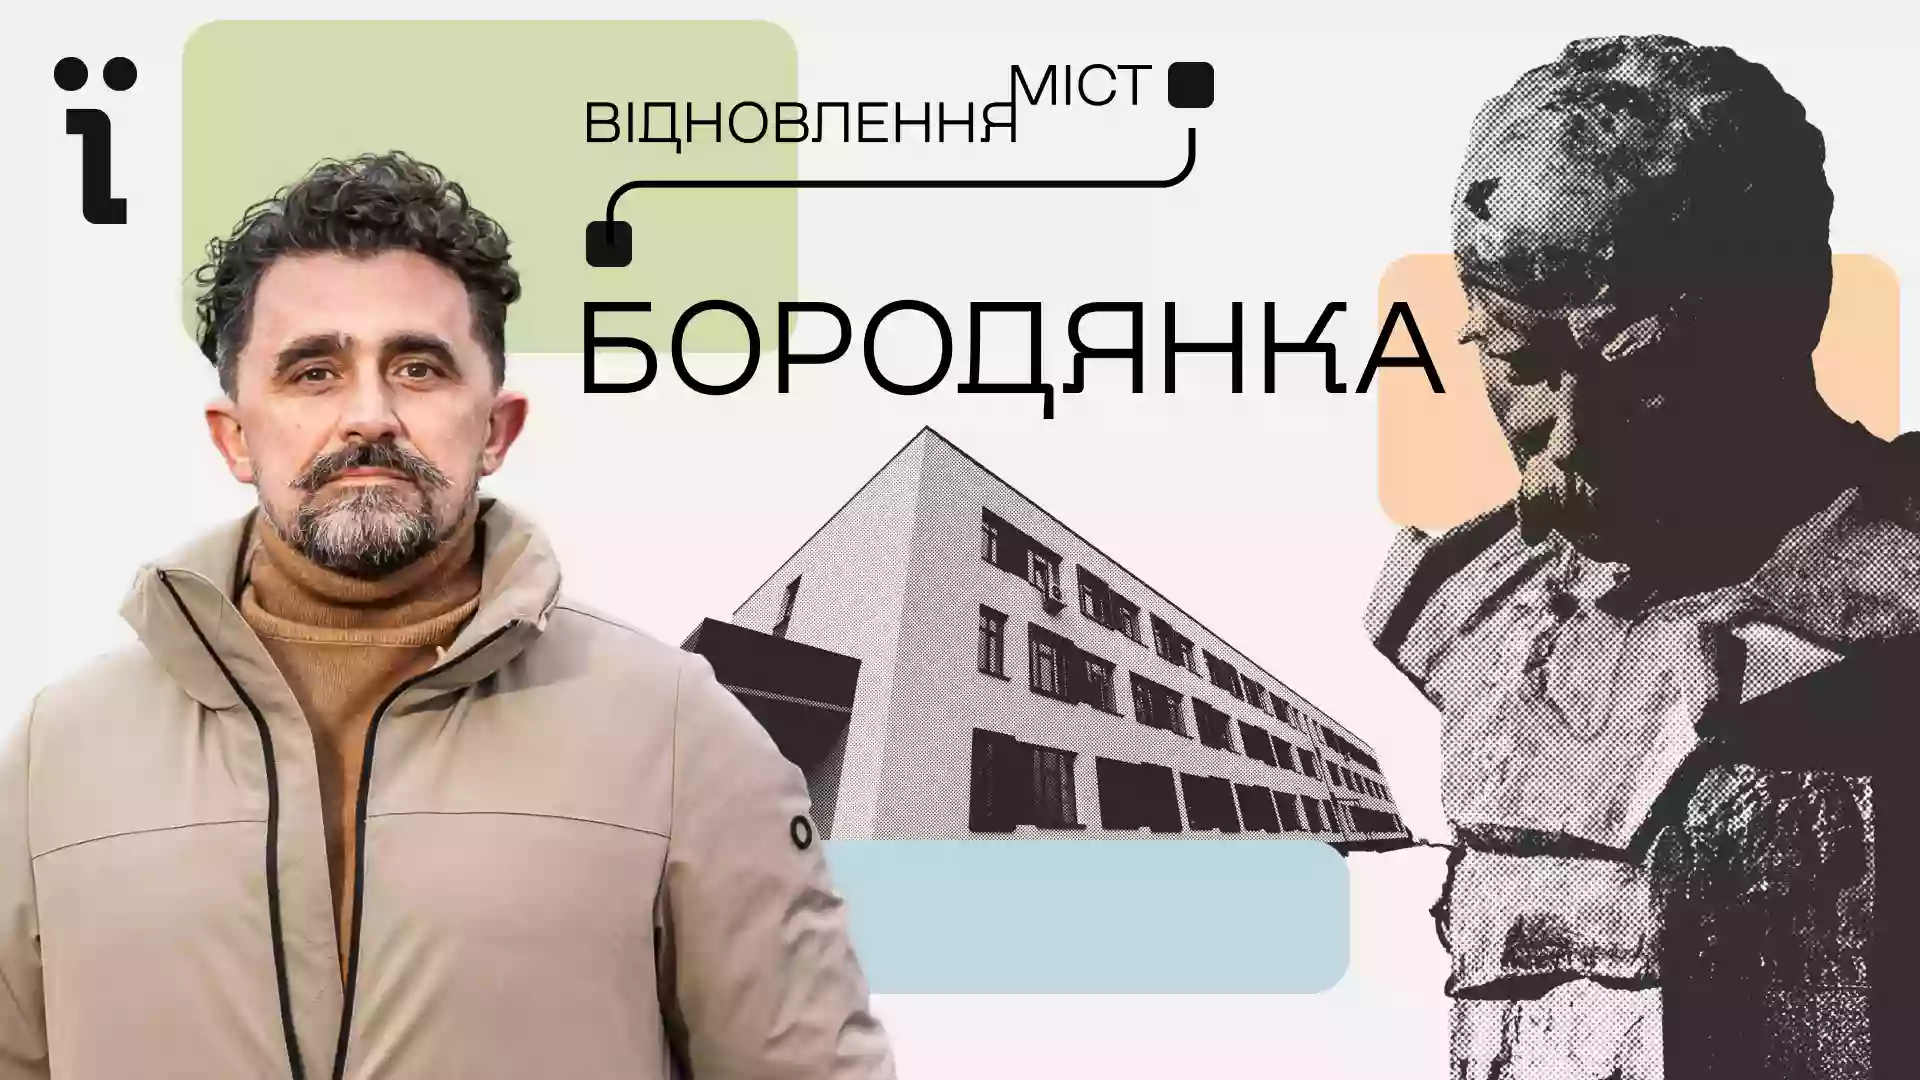 Ukraїner презентував документальний фільм про відновлення Бородянки